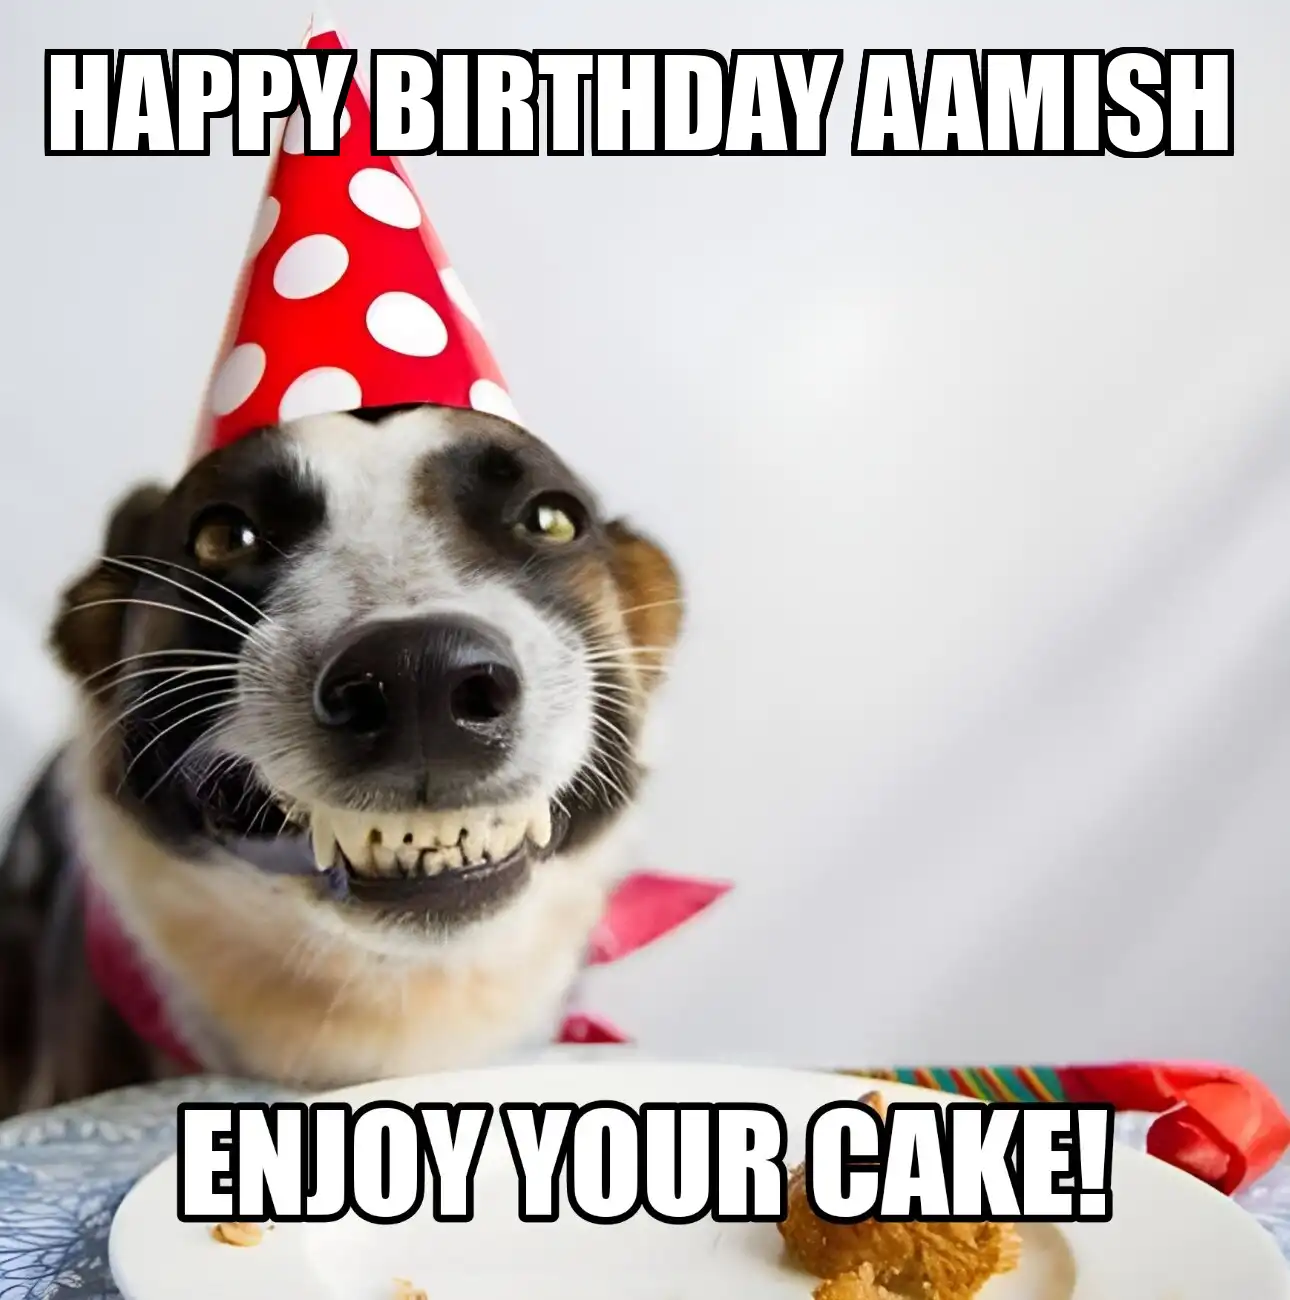 Happy Birthday Aamish Enjoy Your Cake Dog Meme